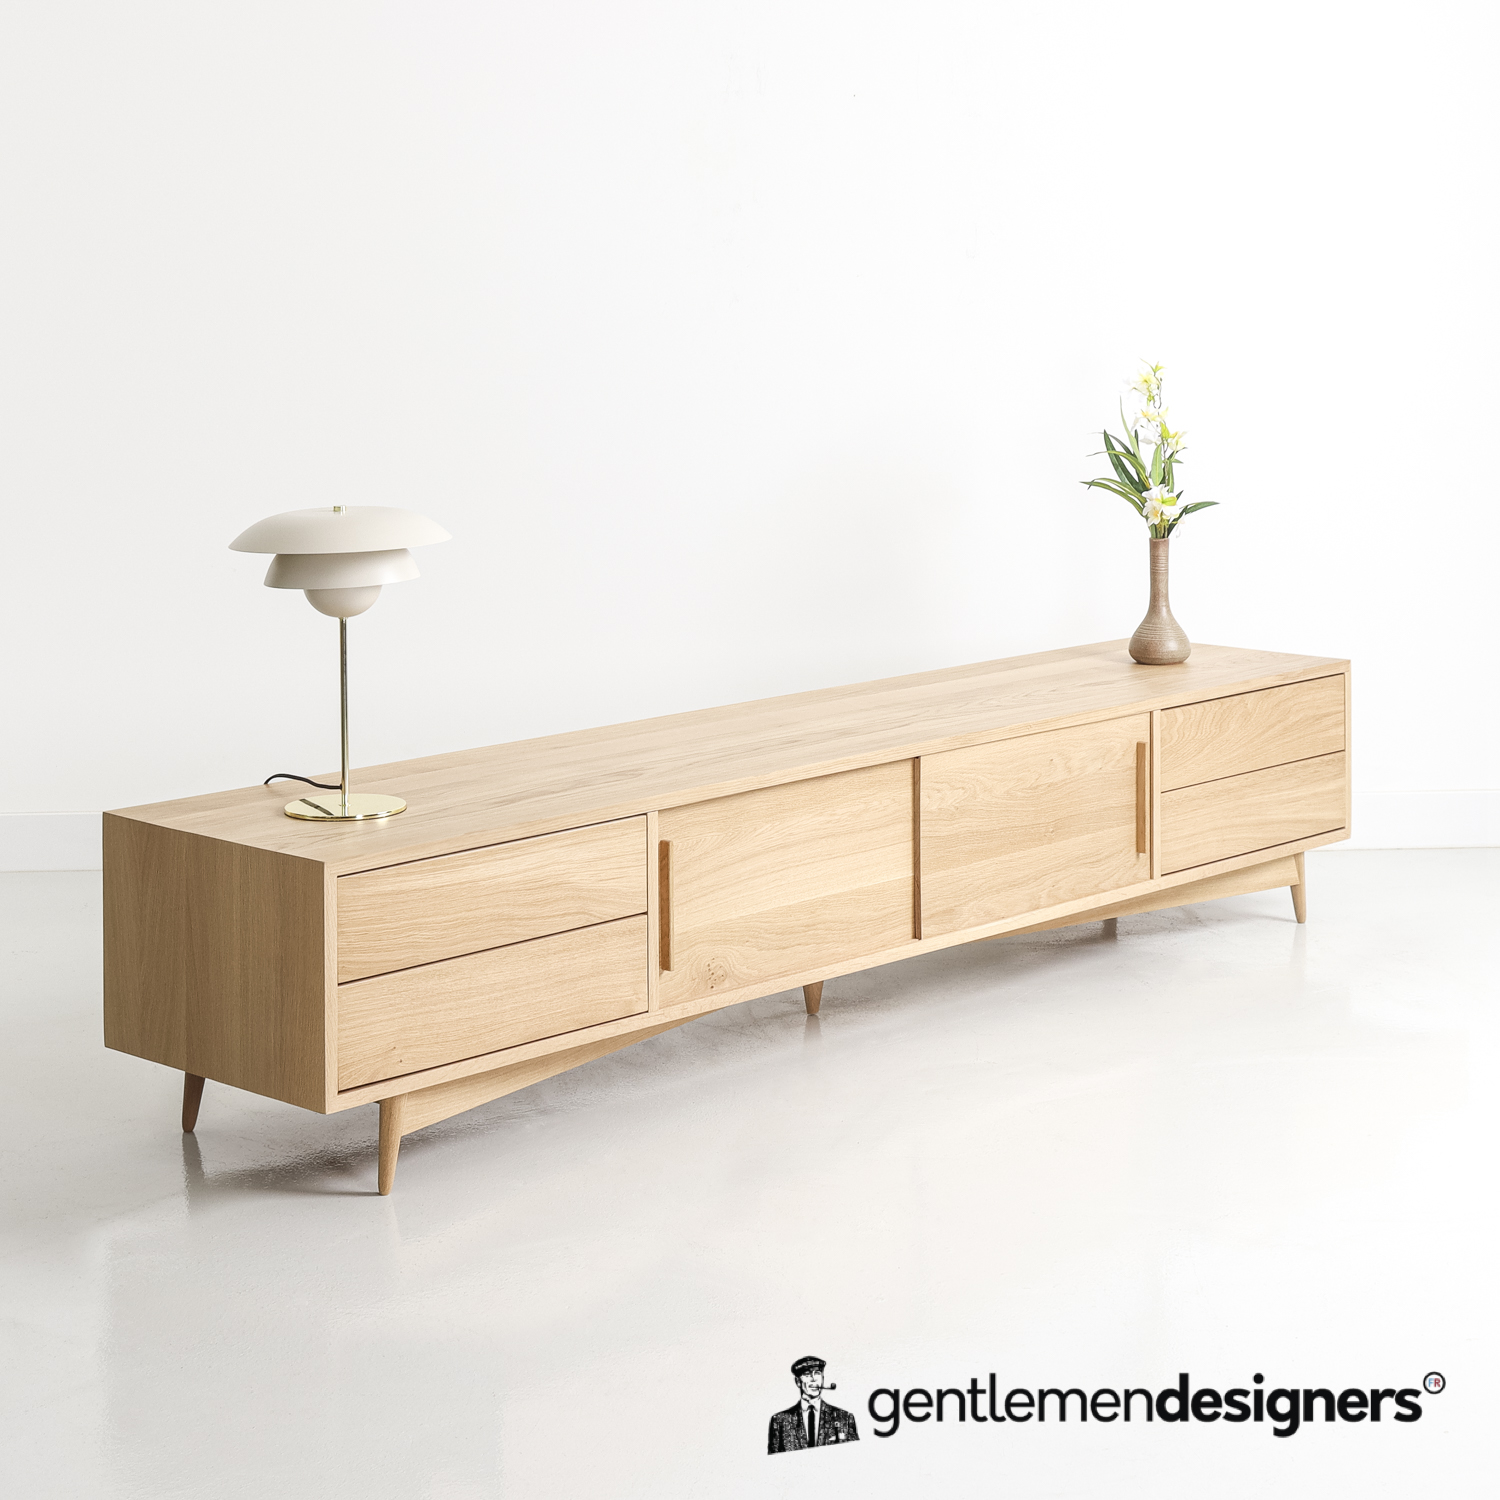 Choisir un meuble en bois massif : Le Design durable !